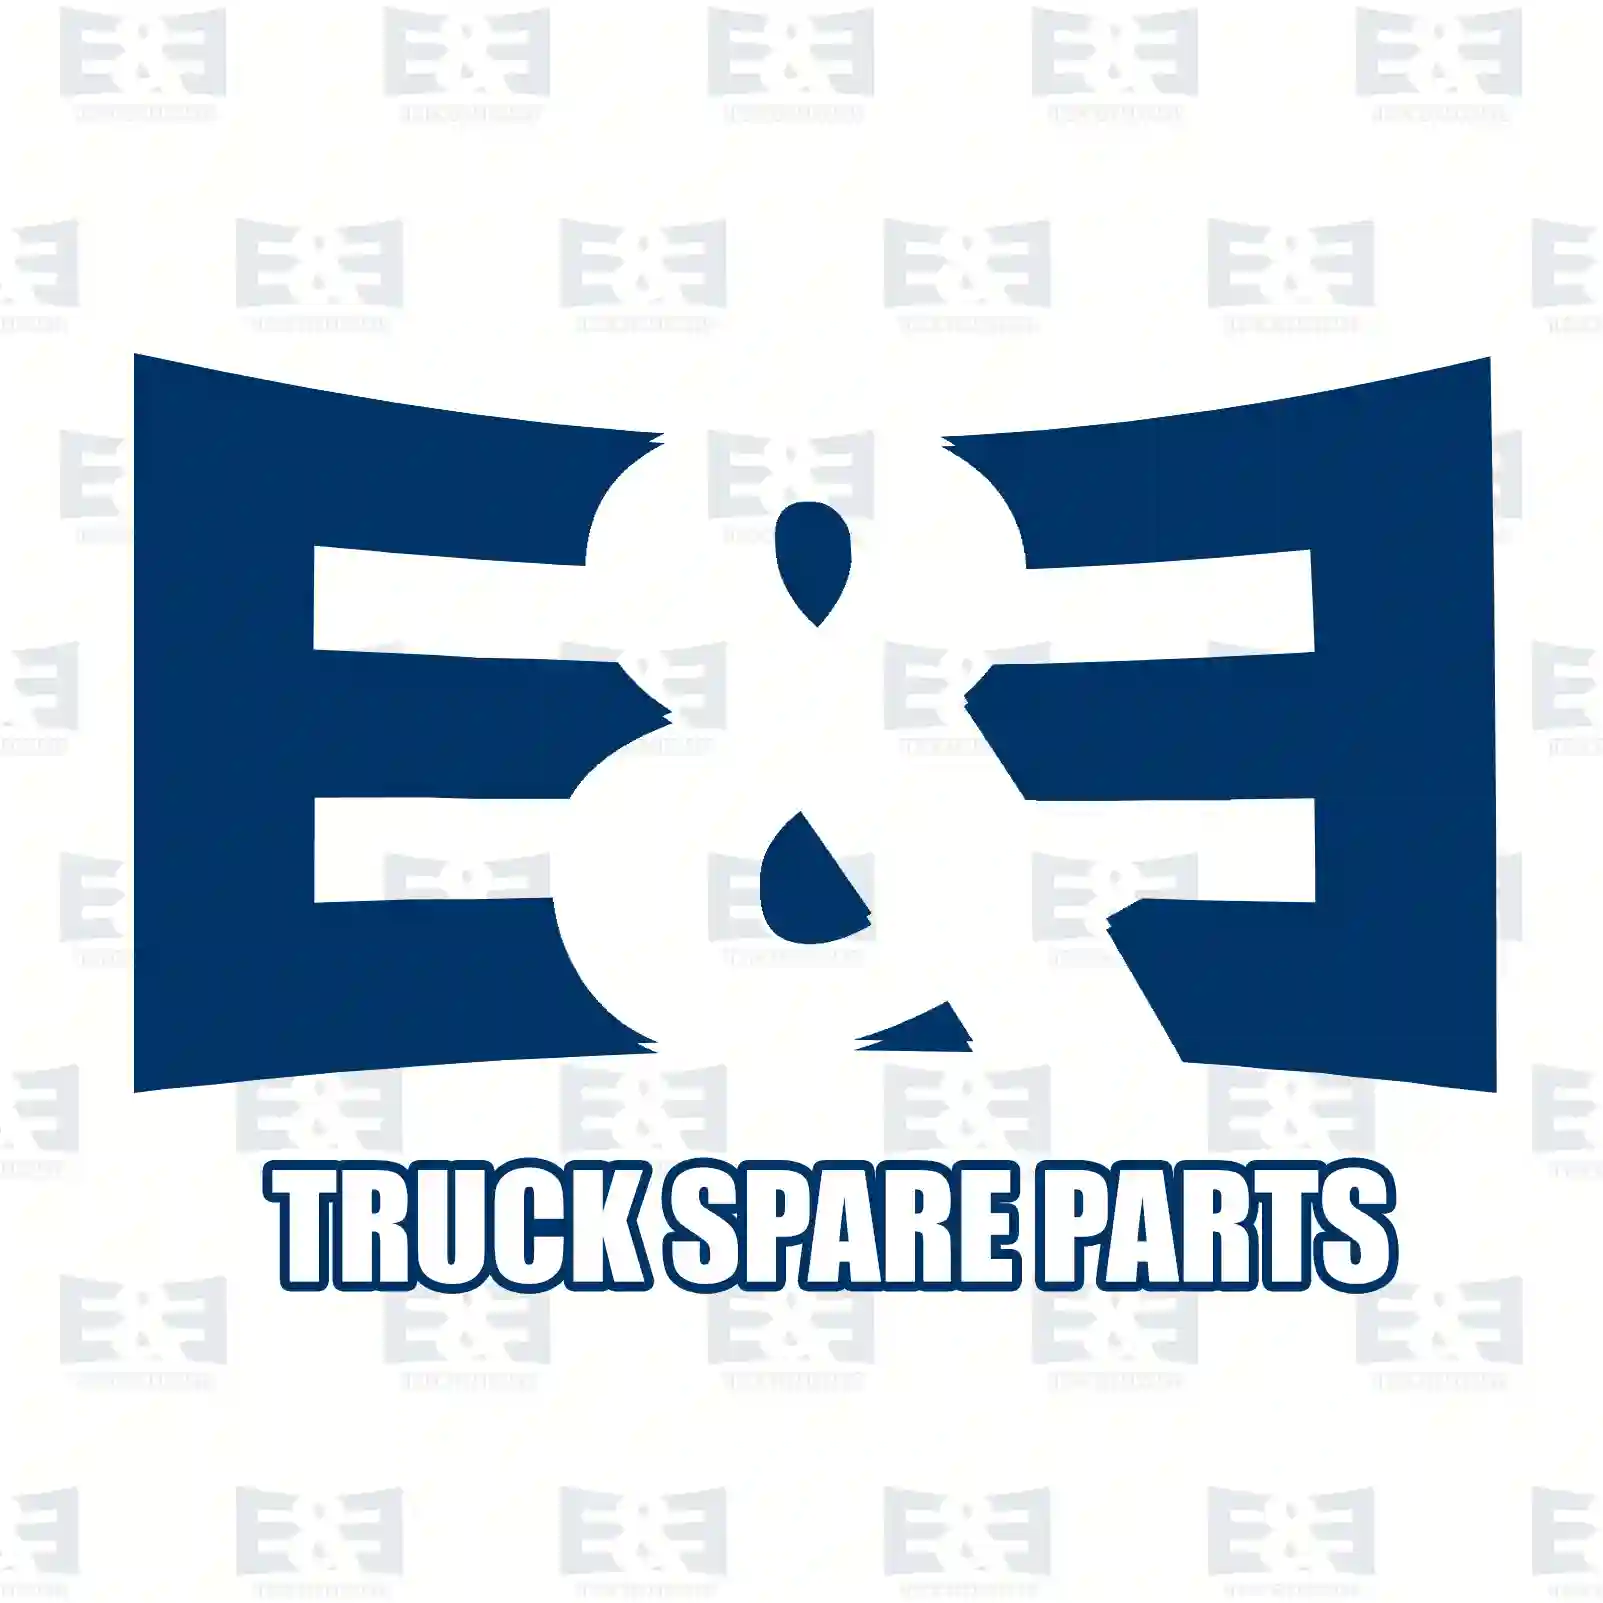 Screw, 2E2286166, 06014944611, N1011056094, , , , , ||  2E2286166 E&E Truck Spare Parts | Truck Spare Parts, Auotomotive Spare Parts Screw, 2E2286166, 06014944611, N1011056094, , , , , ||  2E2286166 E&E Truck Spare Parts | Truck Spare Parts, Auotomotive Spare Parts